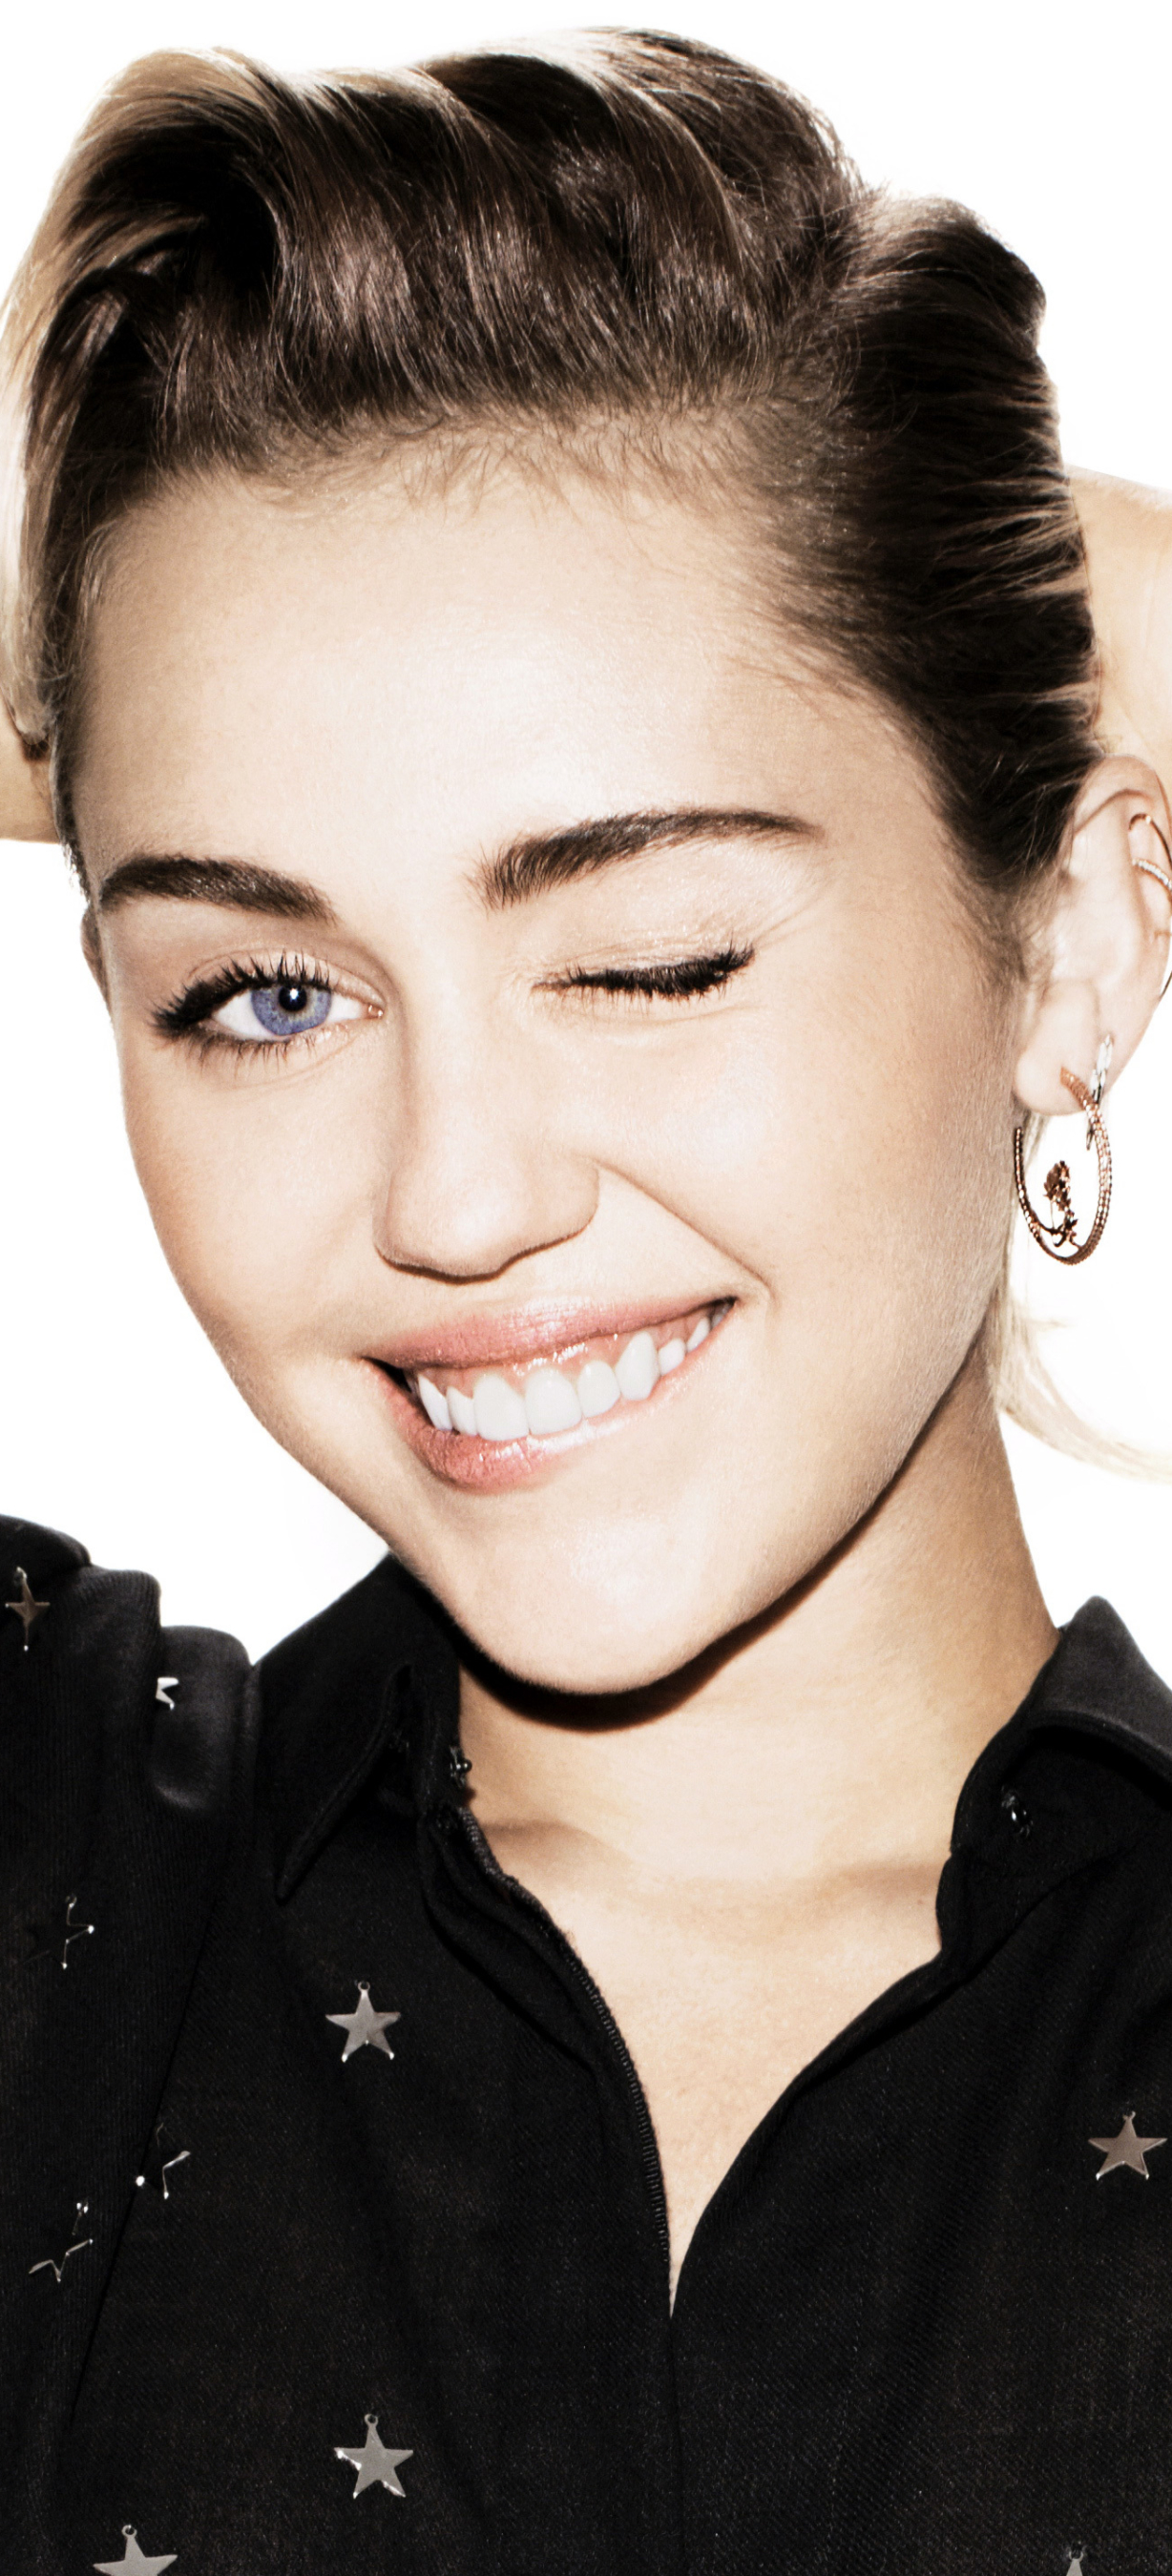 Descarga gratuita de fondo de pantalla para móvil de Música, Sonreír, Cantante, Ojos Azules, Americano, Guiño, Miley Cyrus, Actriz.